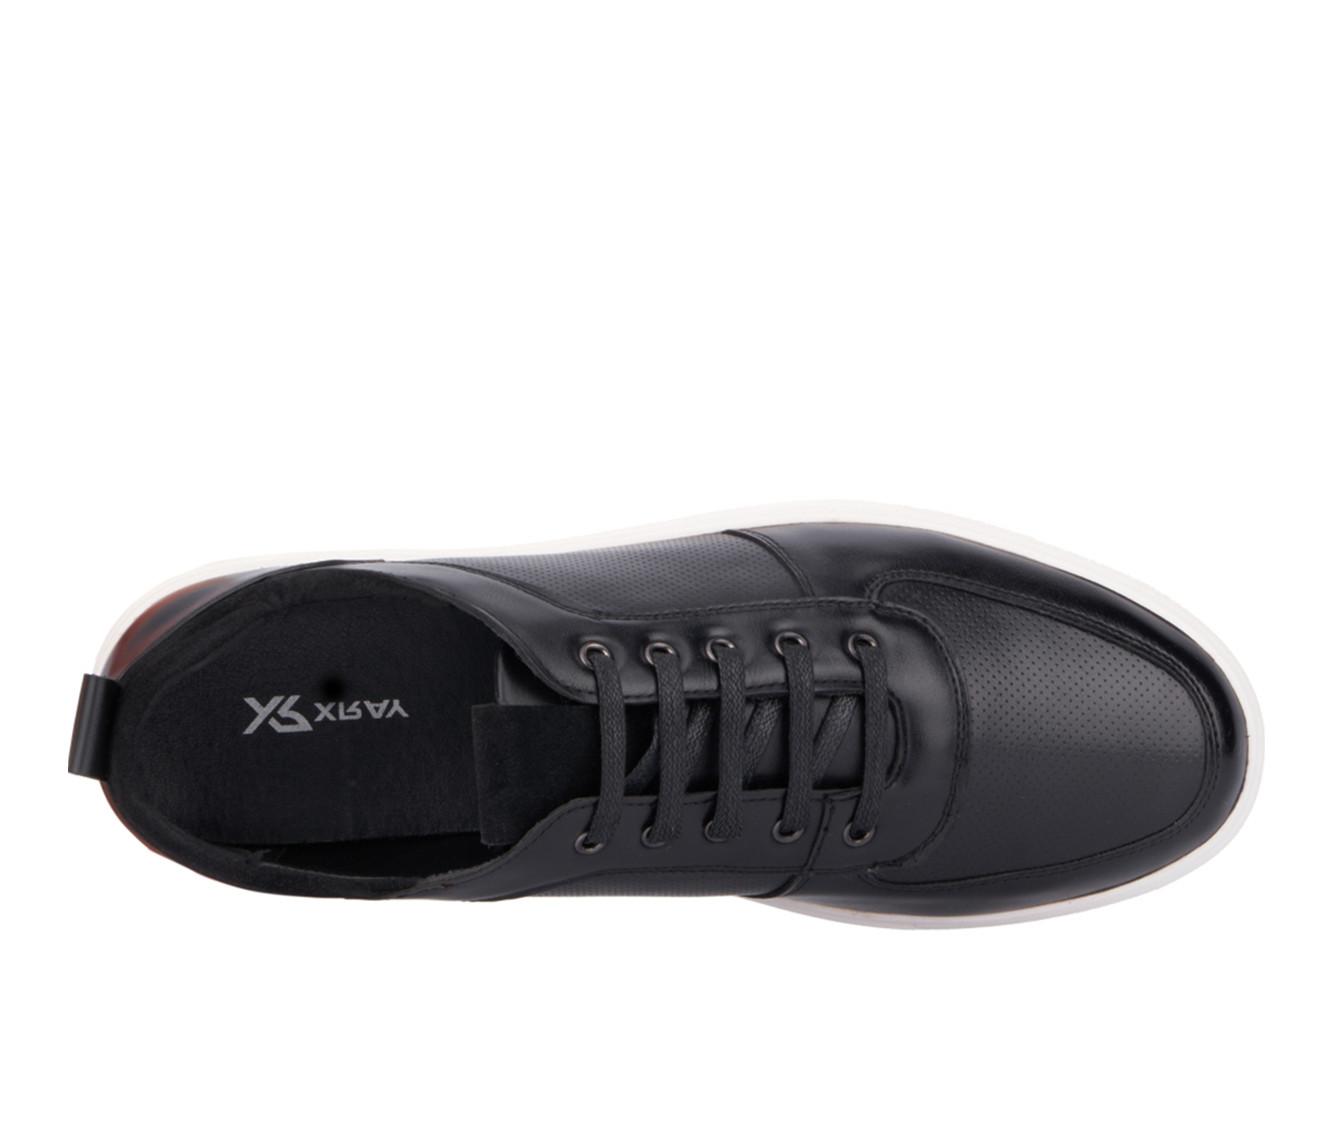 Men's Xray Footwear Andrè Casual Sneaker Oxfords